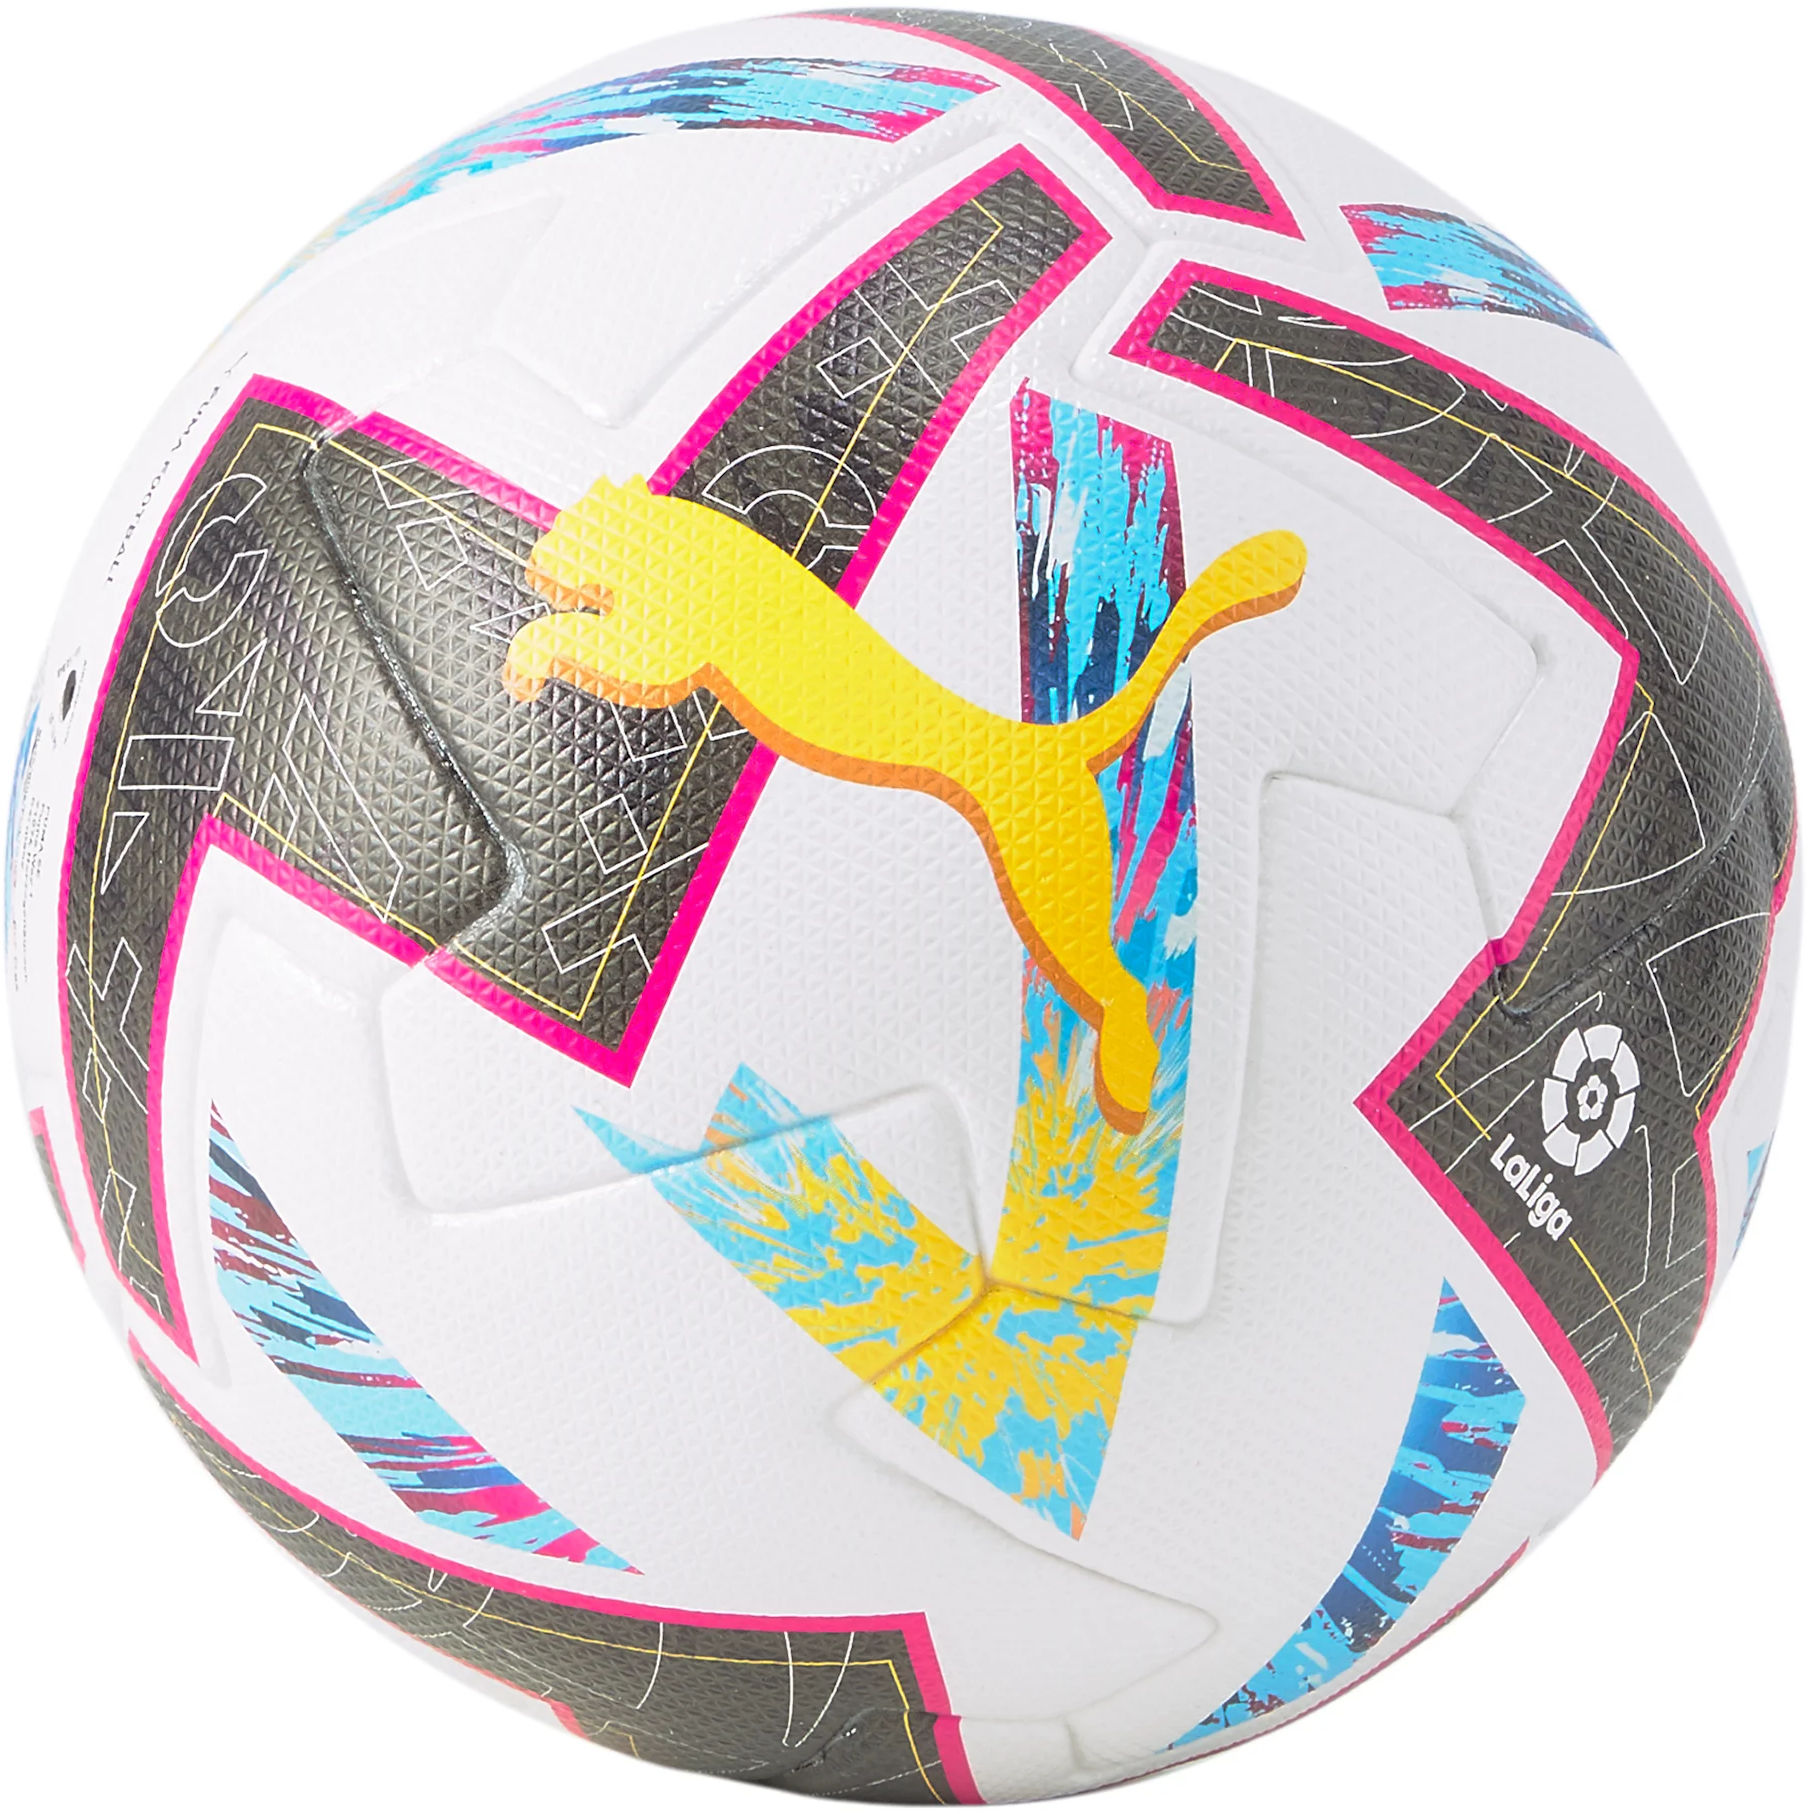 Puma Orbita LaLiga 1 (FIFA Quality Pro) Labda